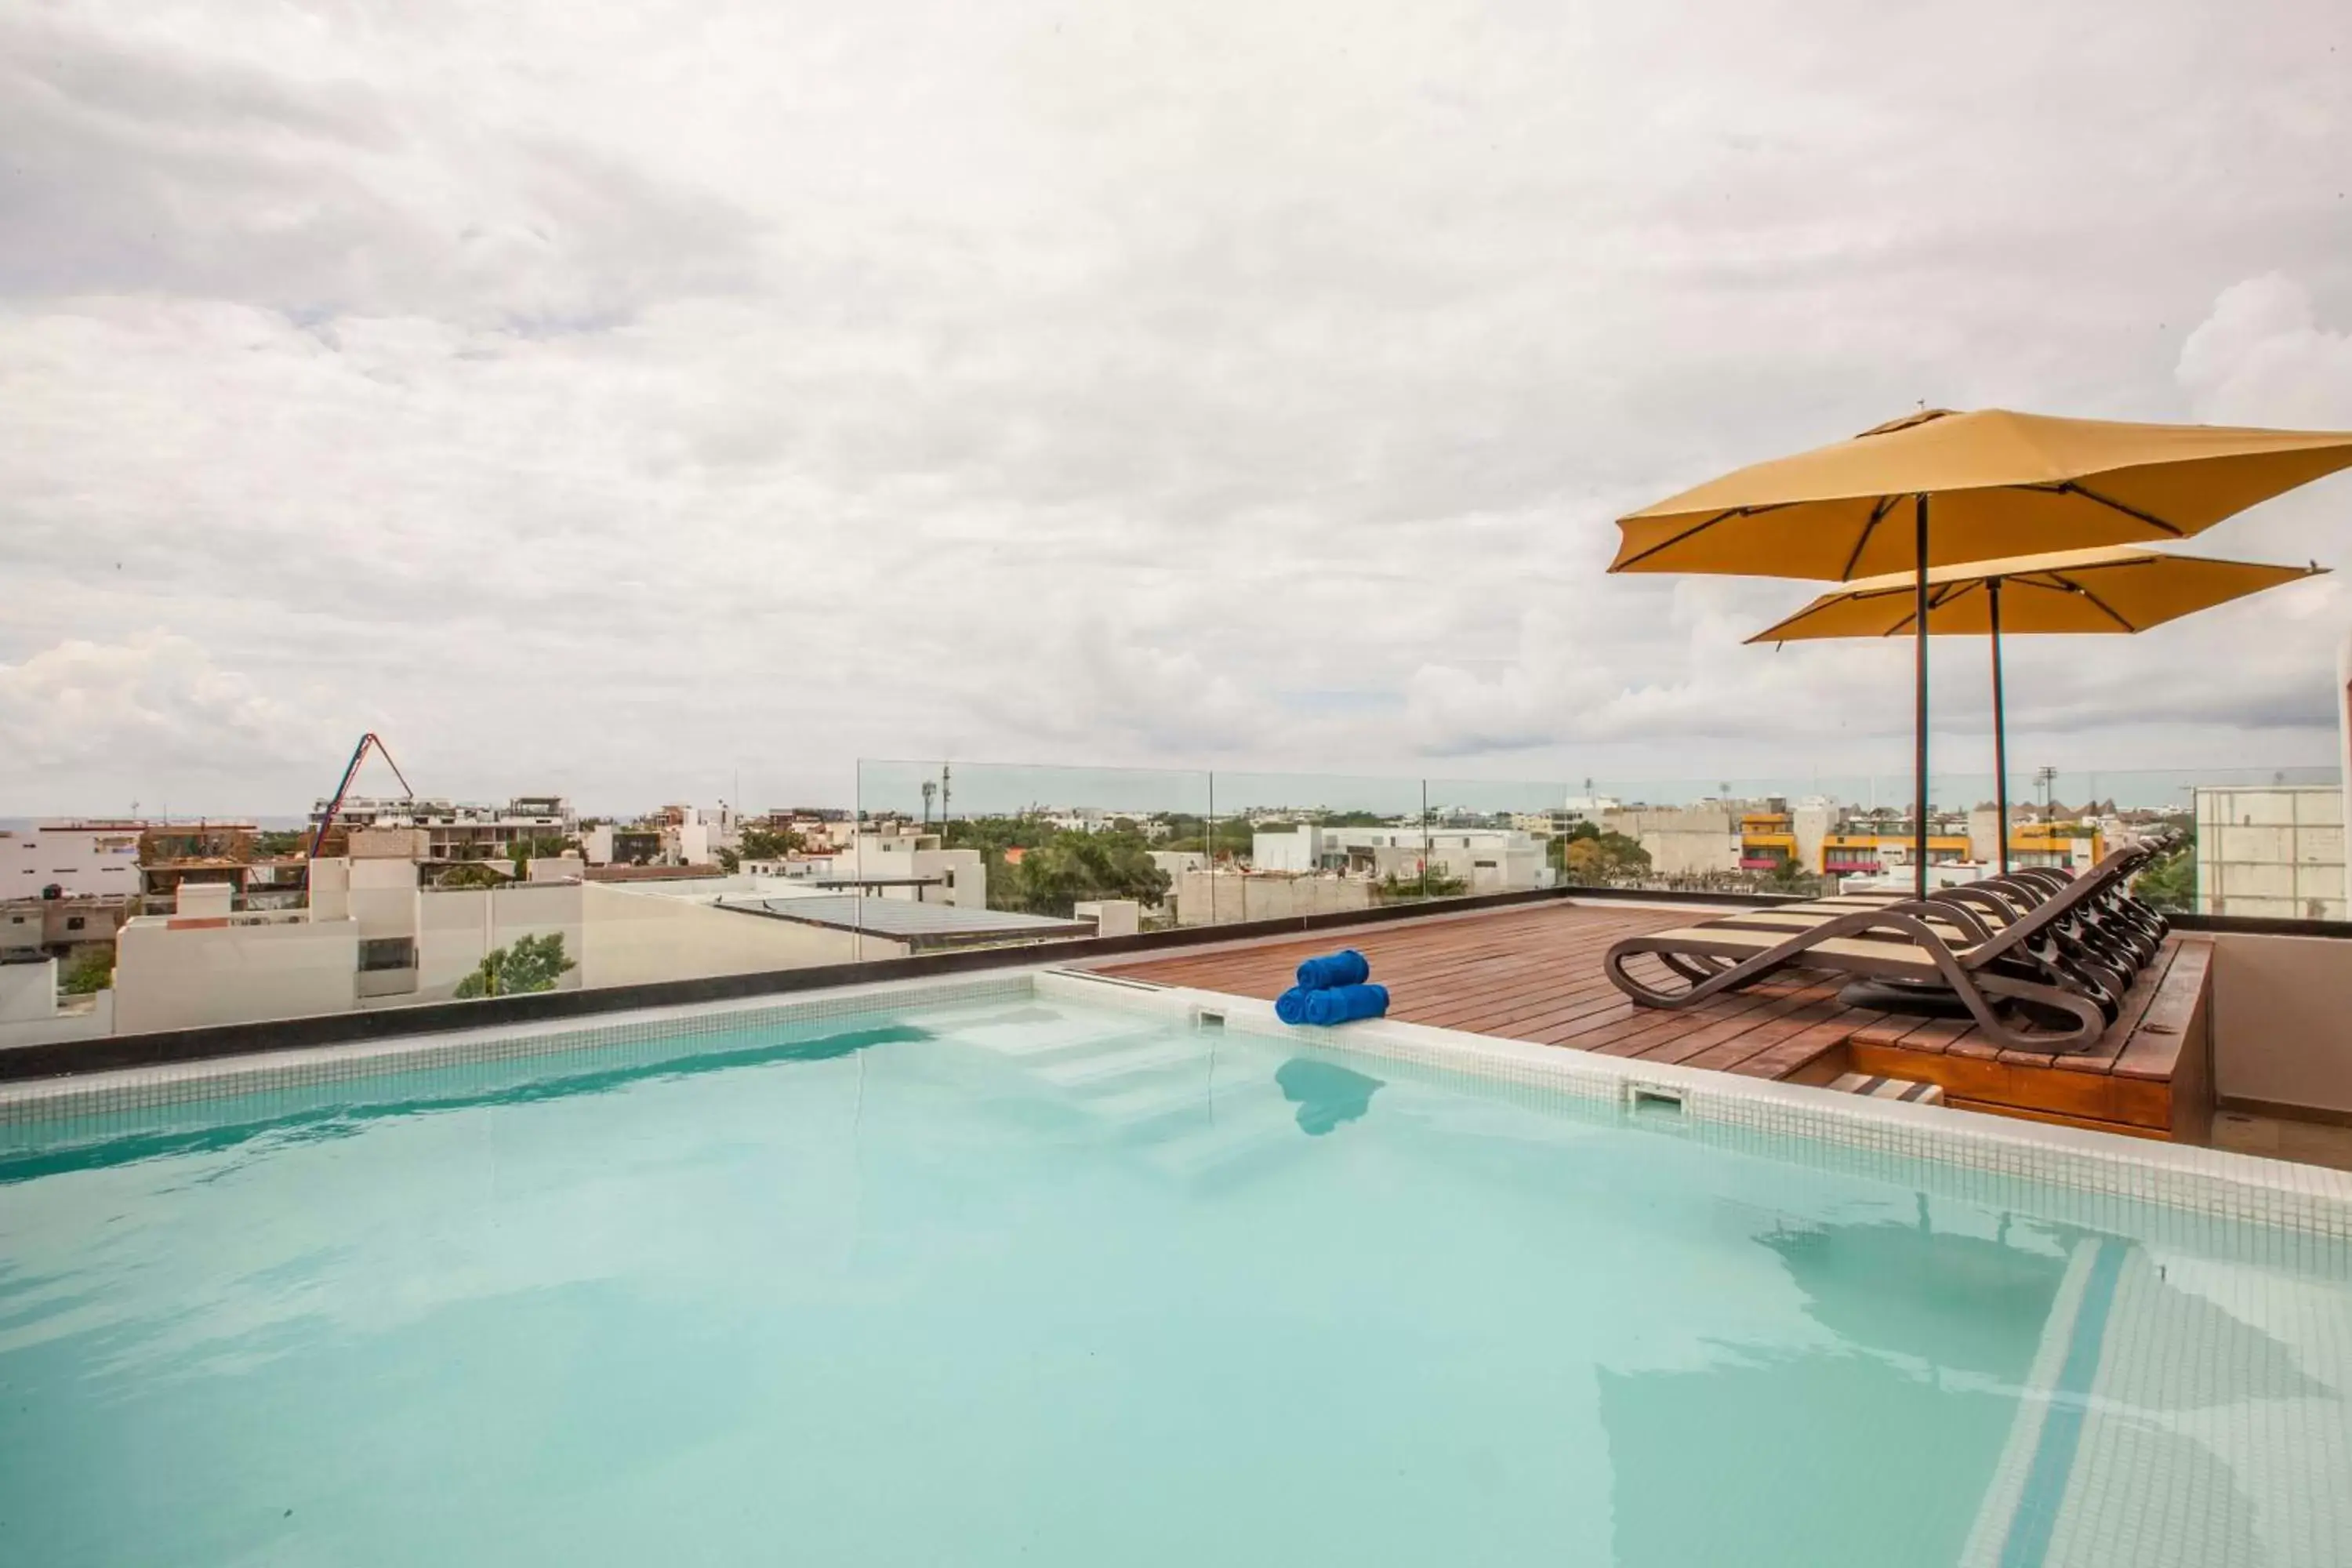 Balcony/Terrace, Swimming Pool in Hotelito del Mar Playa del Carmen